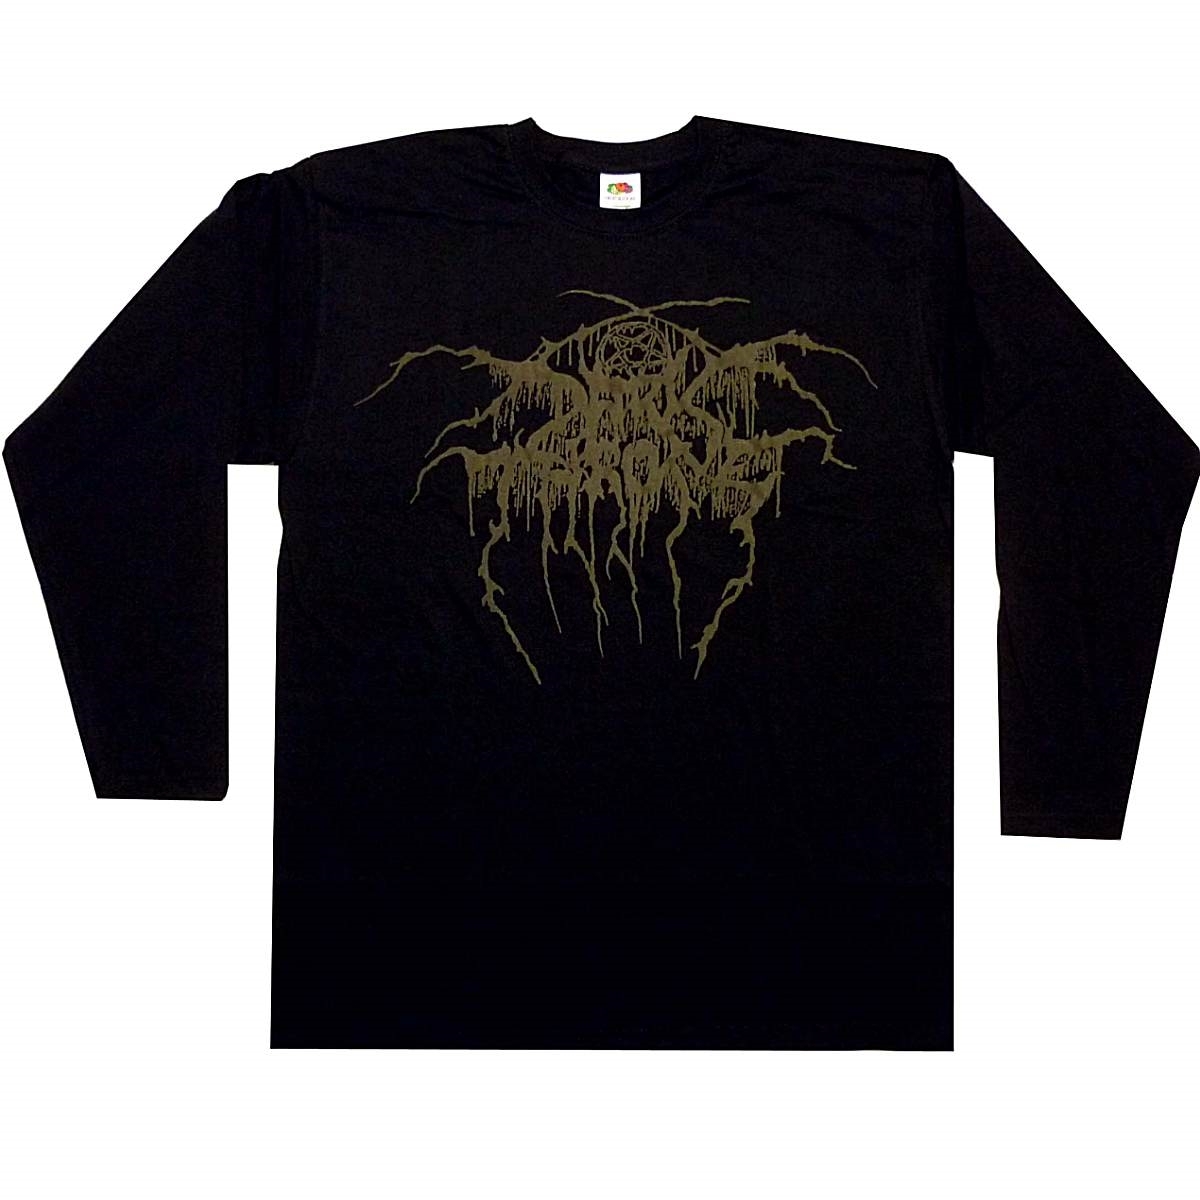 Official Licensed-Darkthrone-True Norwegian Black Metal T Shirt Black Metal